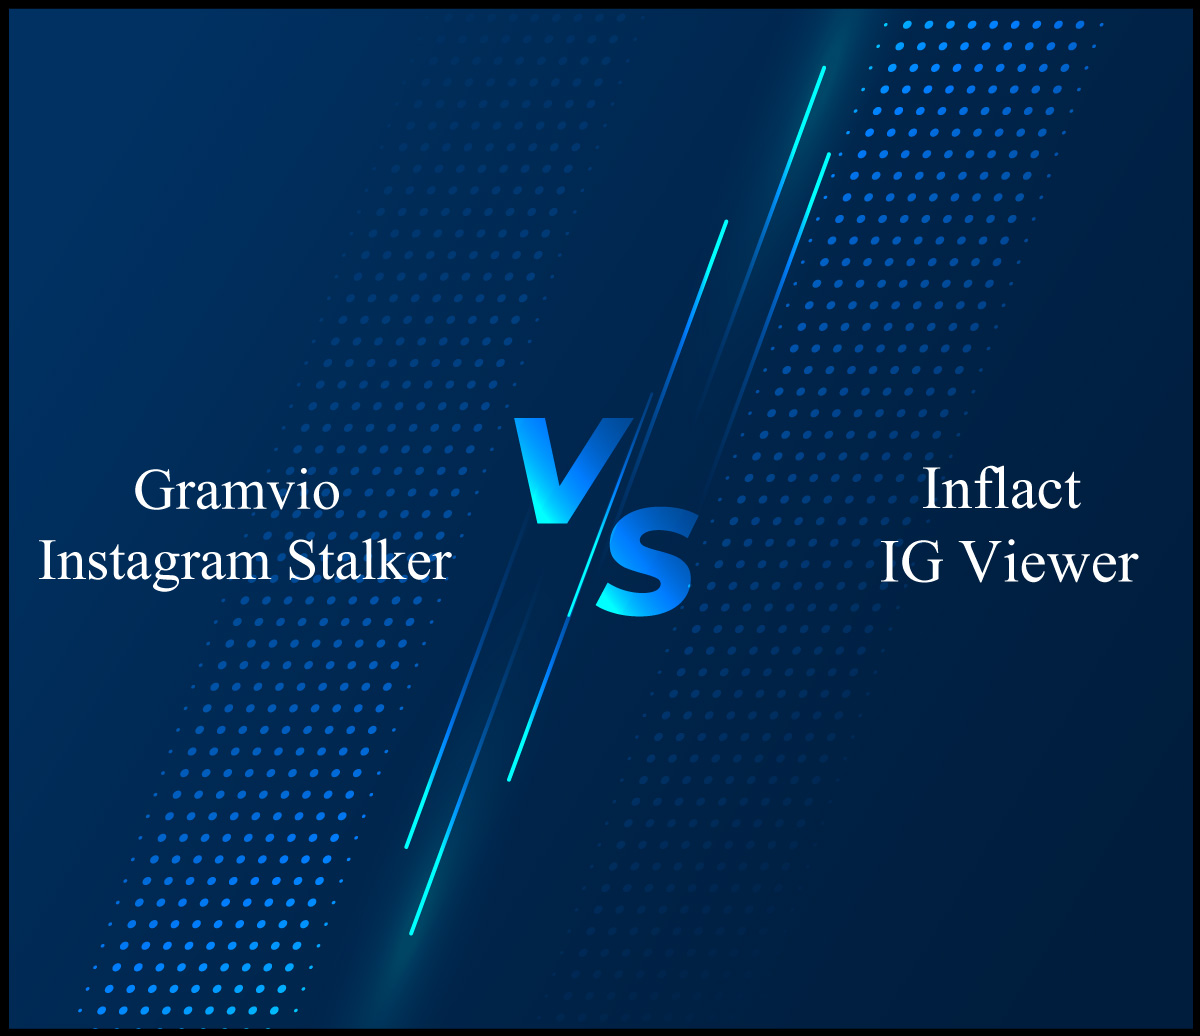 Gramvio Instagram Stalker VS Inflact IG Viewer